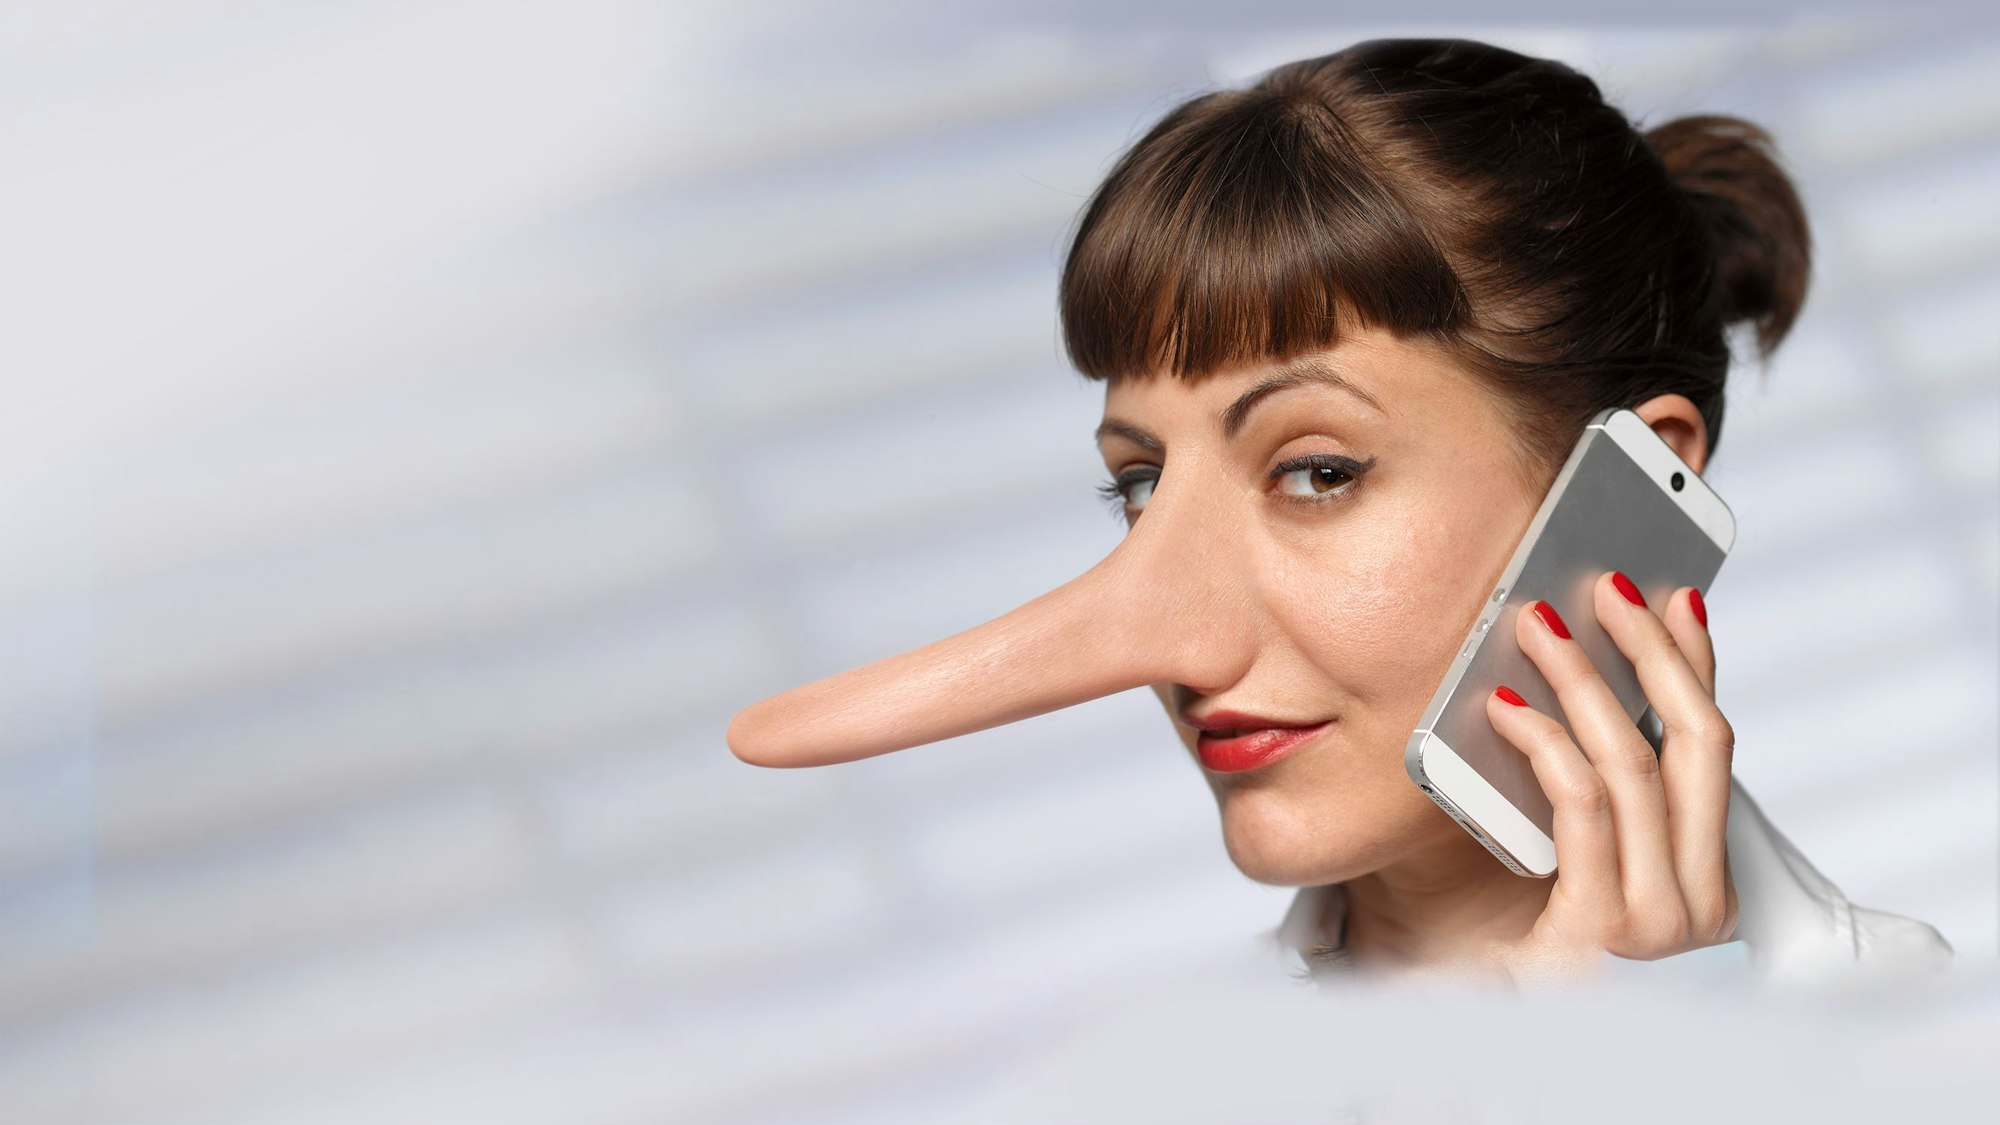 Eine Frau mit einer langen Nase telefoniert mit einem Mobiltelefon.